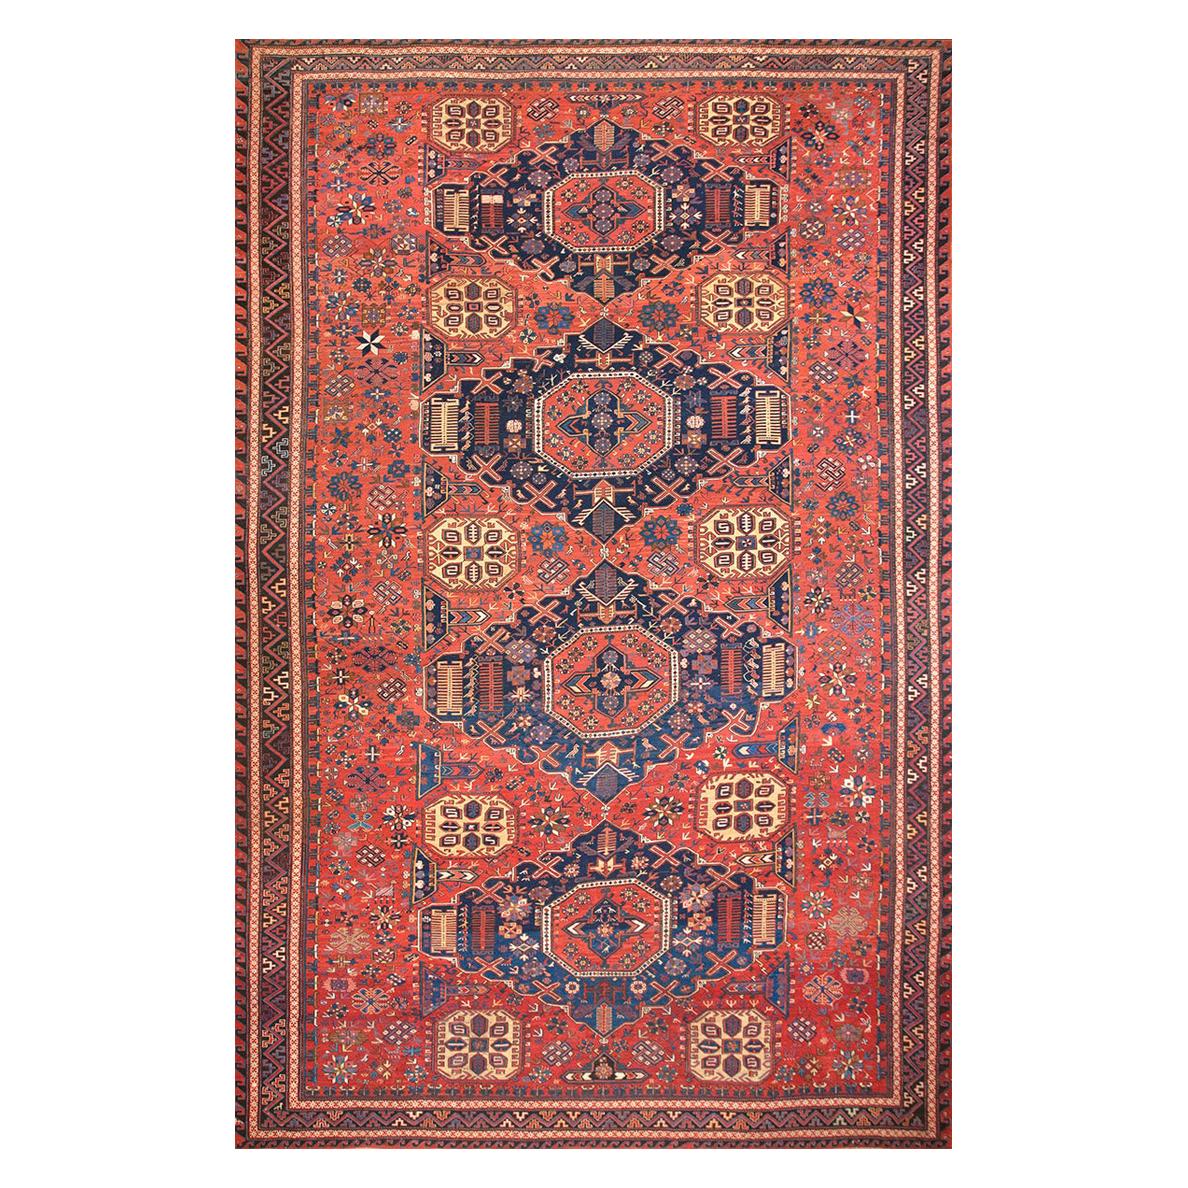 19th Century Caucasian Sumak Carpet ( 11'2" x 17'4" - 340 x 530 ) For Sale